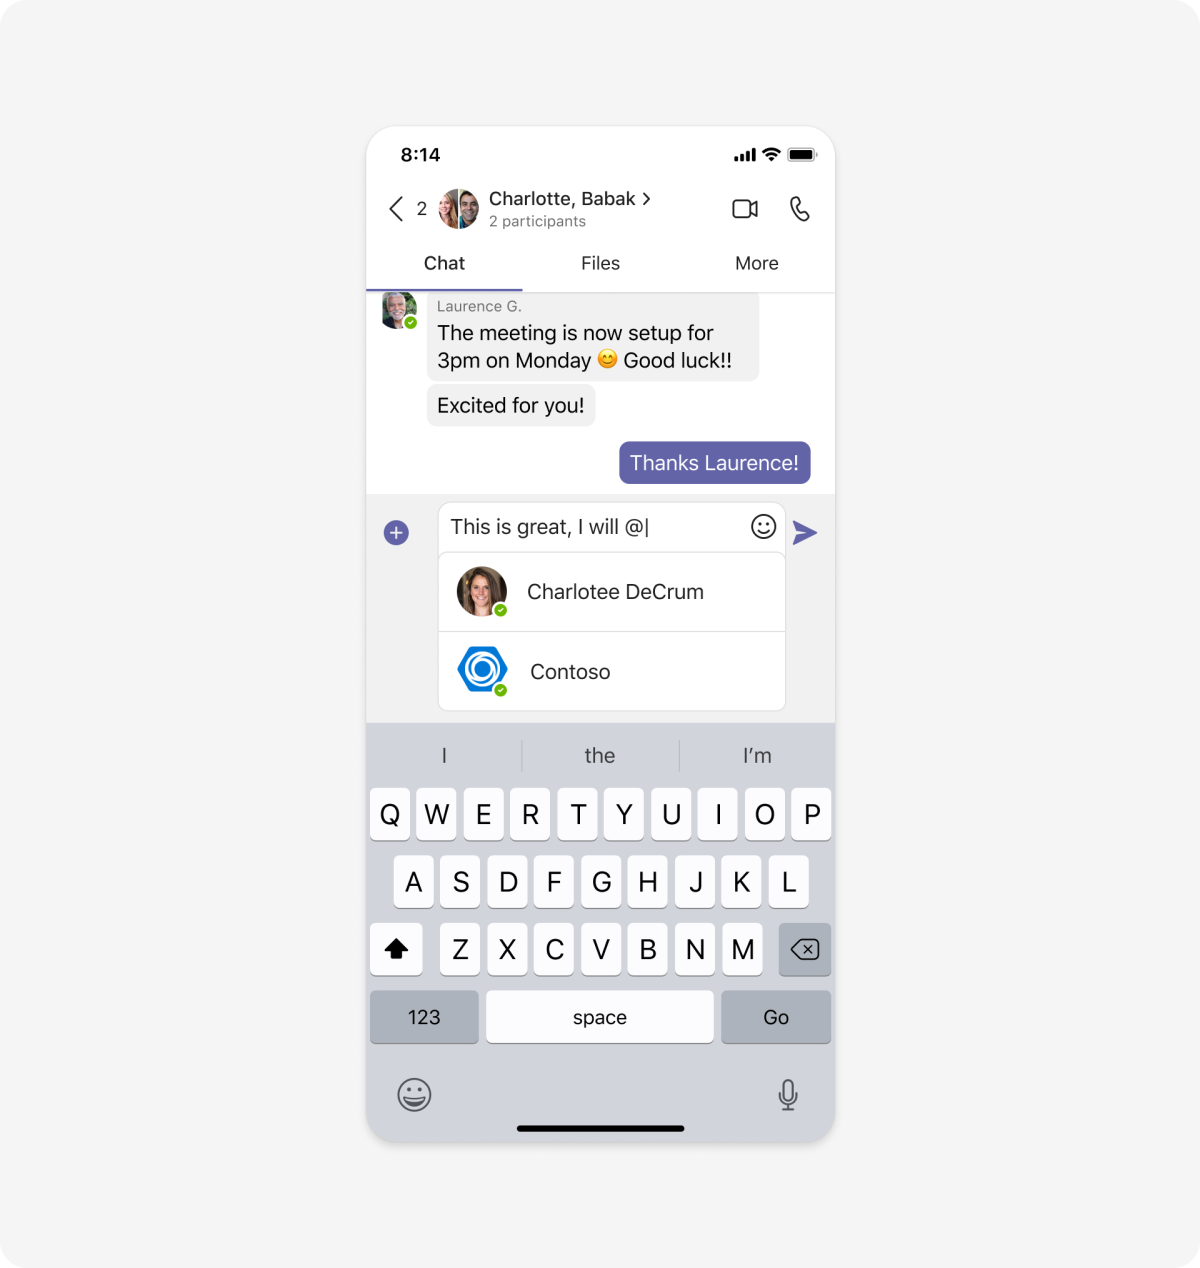 Exemplo mostrando como acessar um bot de dispositivo móvel em um chat em grupo usando uma @menção.